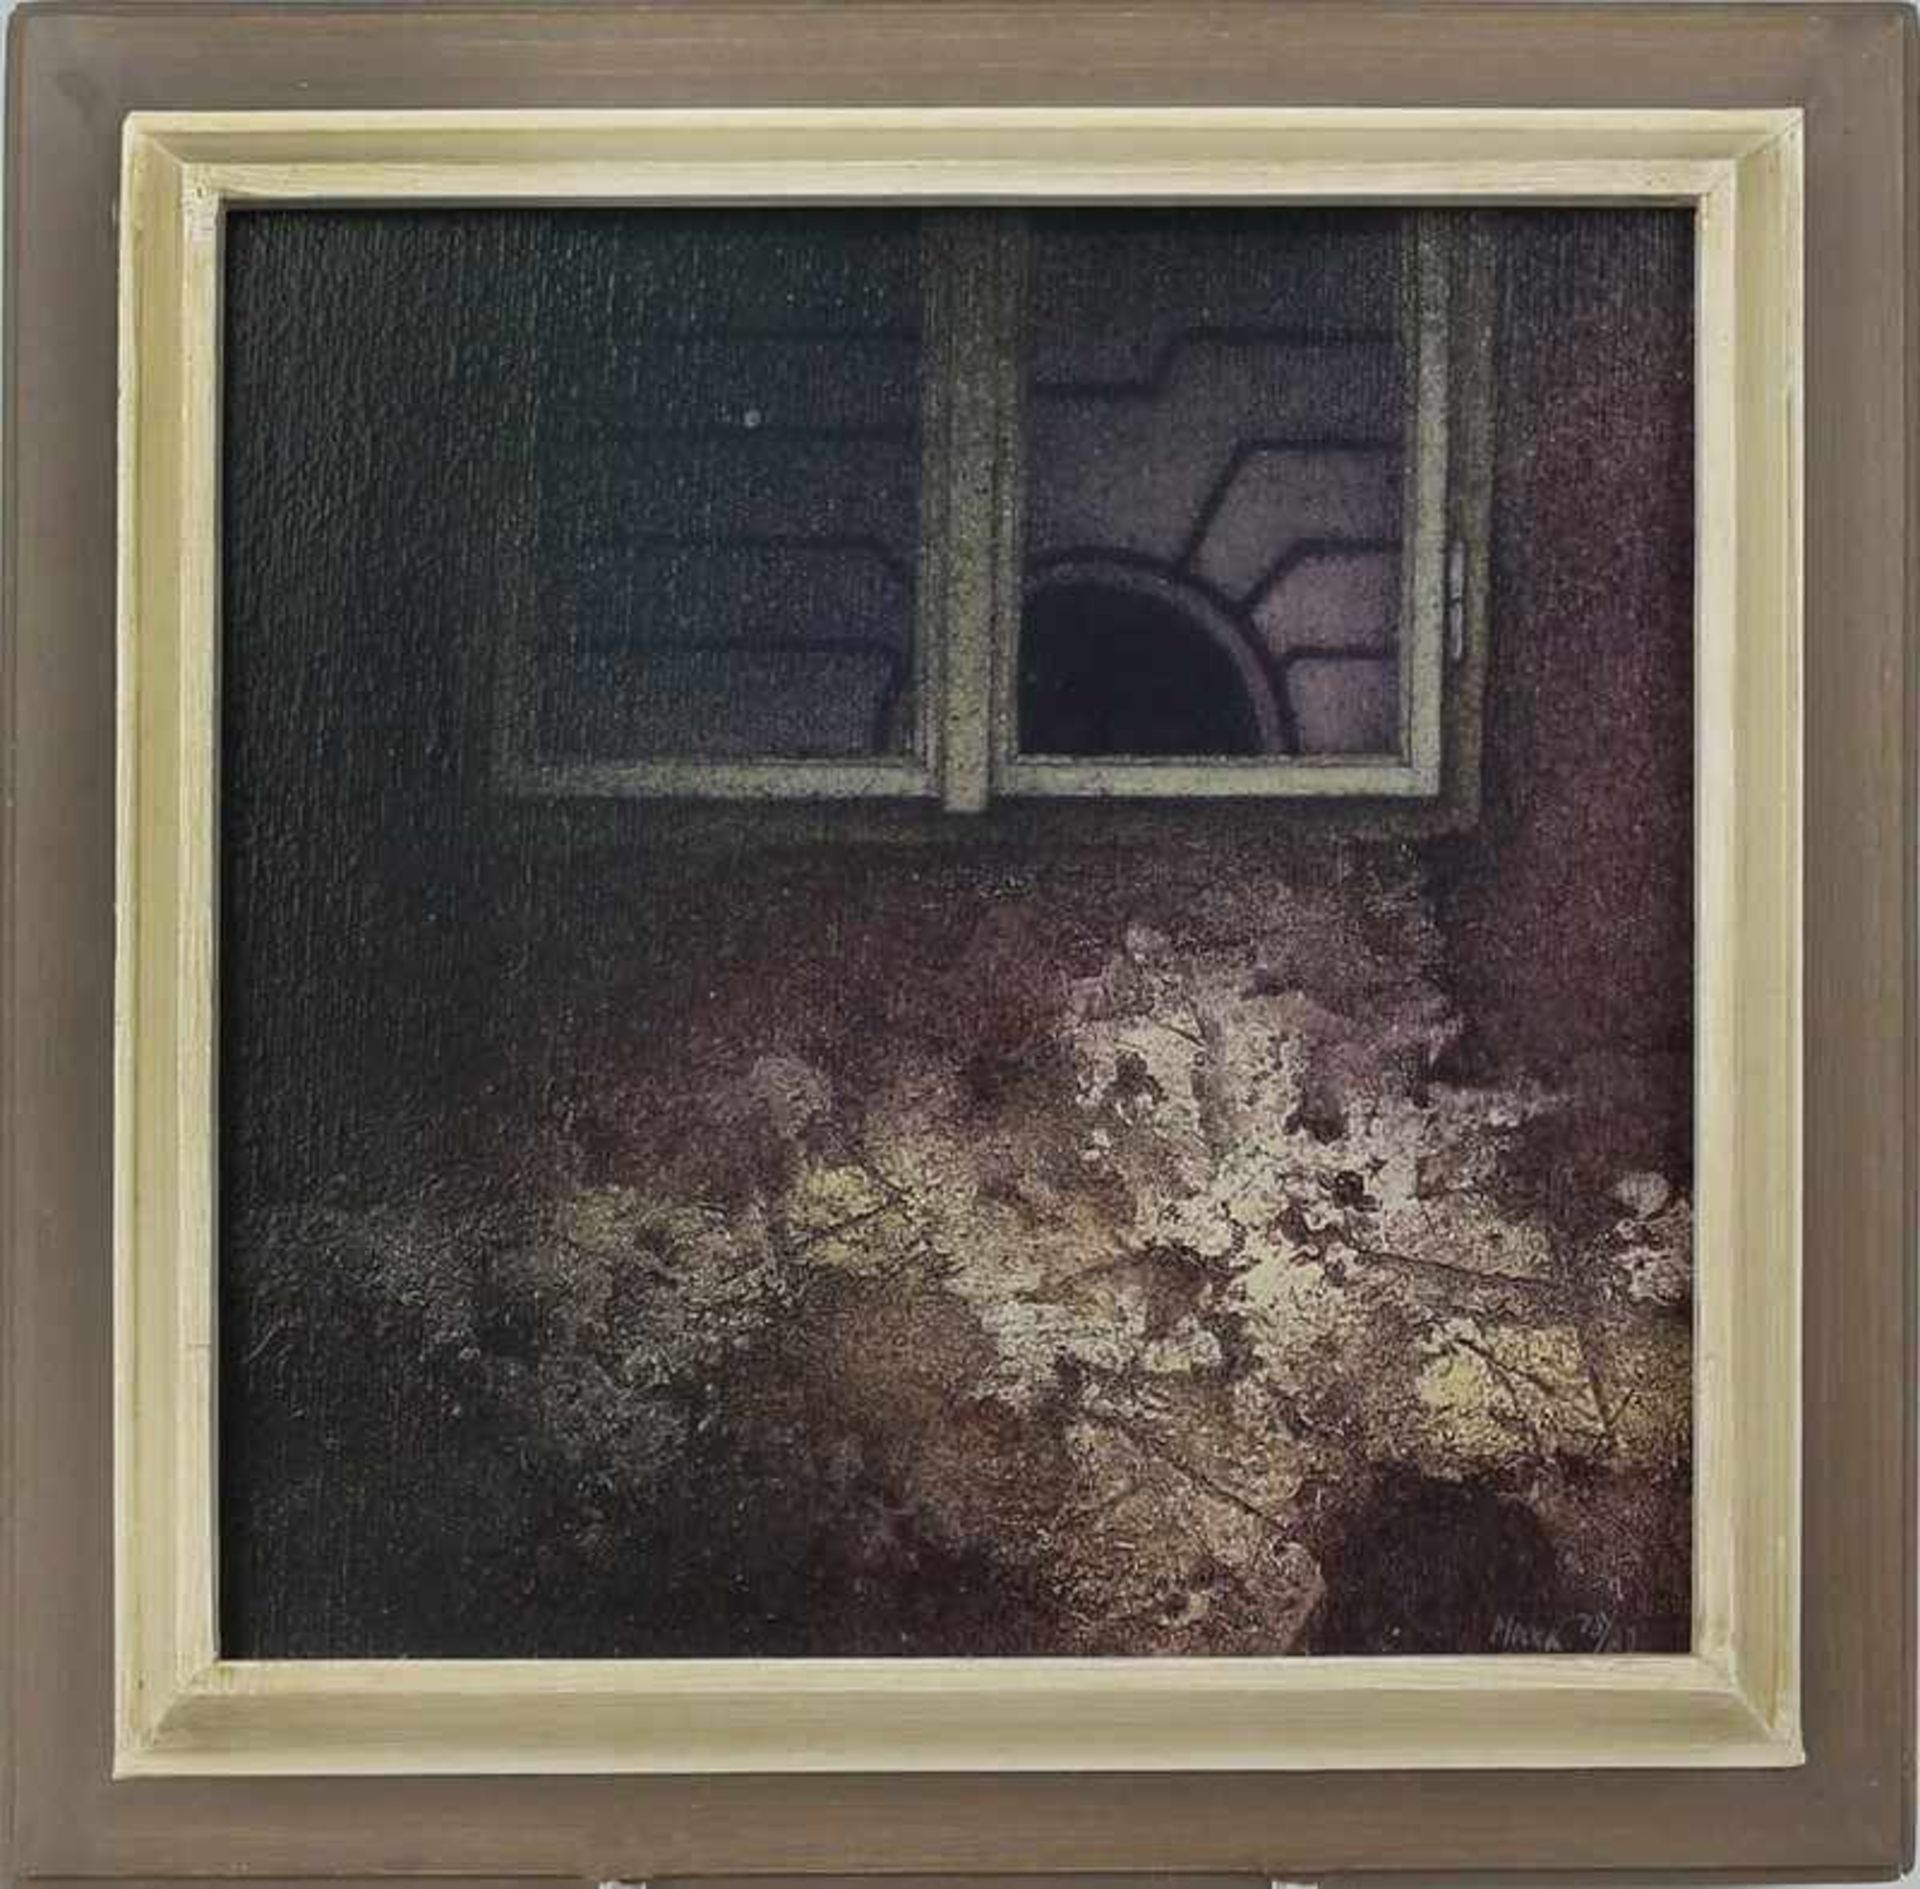 Mocek, Jirí geb. 1945 in Prag, tschechischer Künstler, rs. bez. "Fenster II", Öl/Lwd., gedeckte